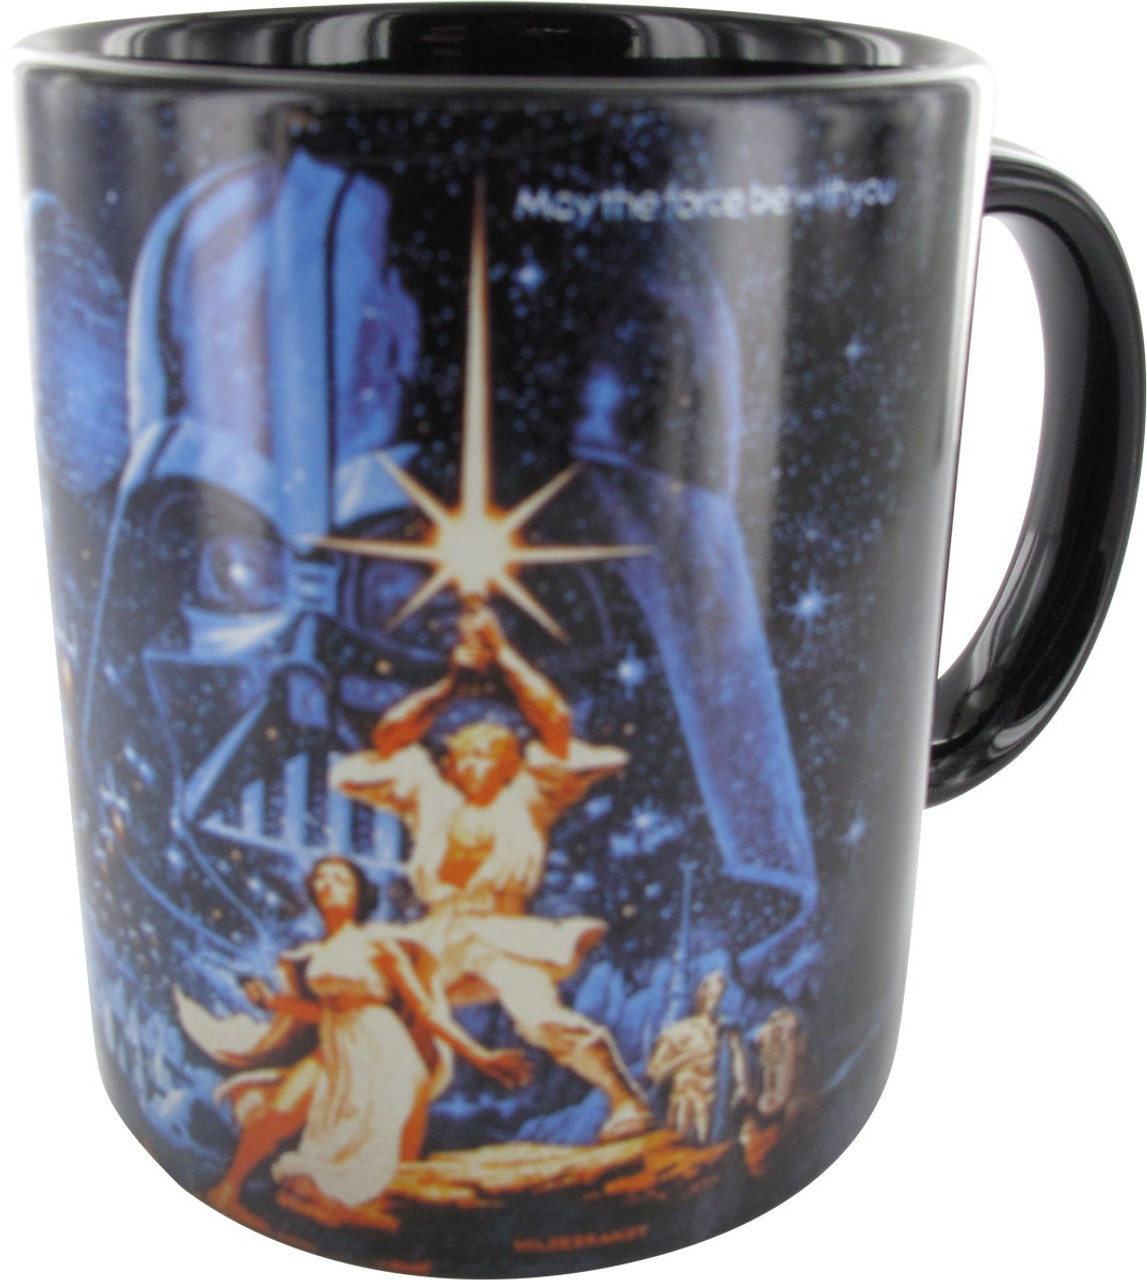 darth vader starwars coffee break' Full Color Mug